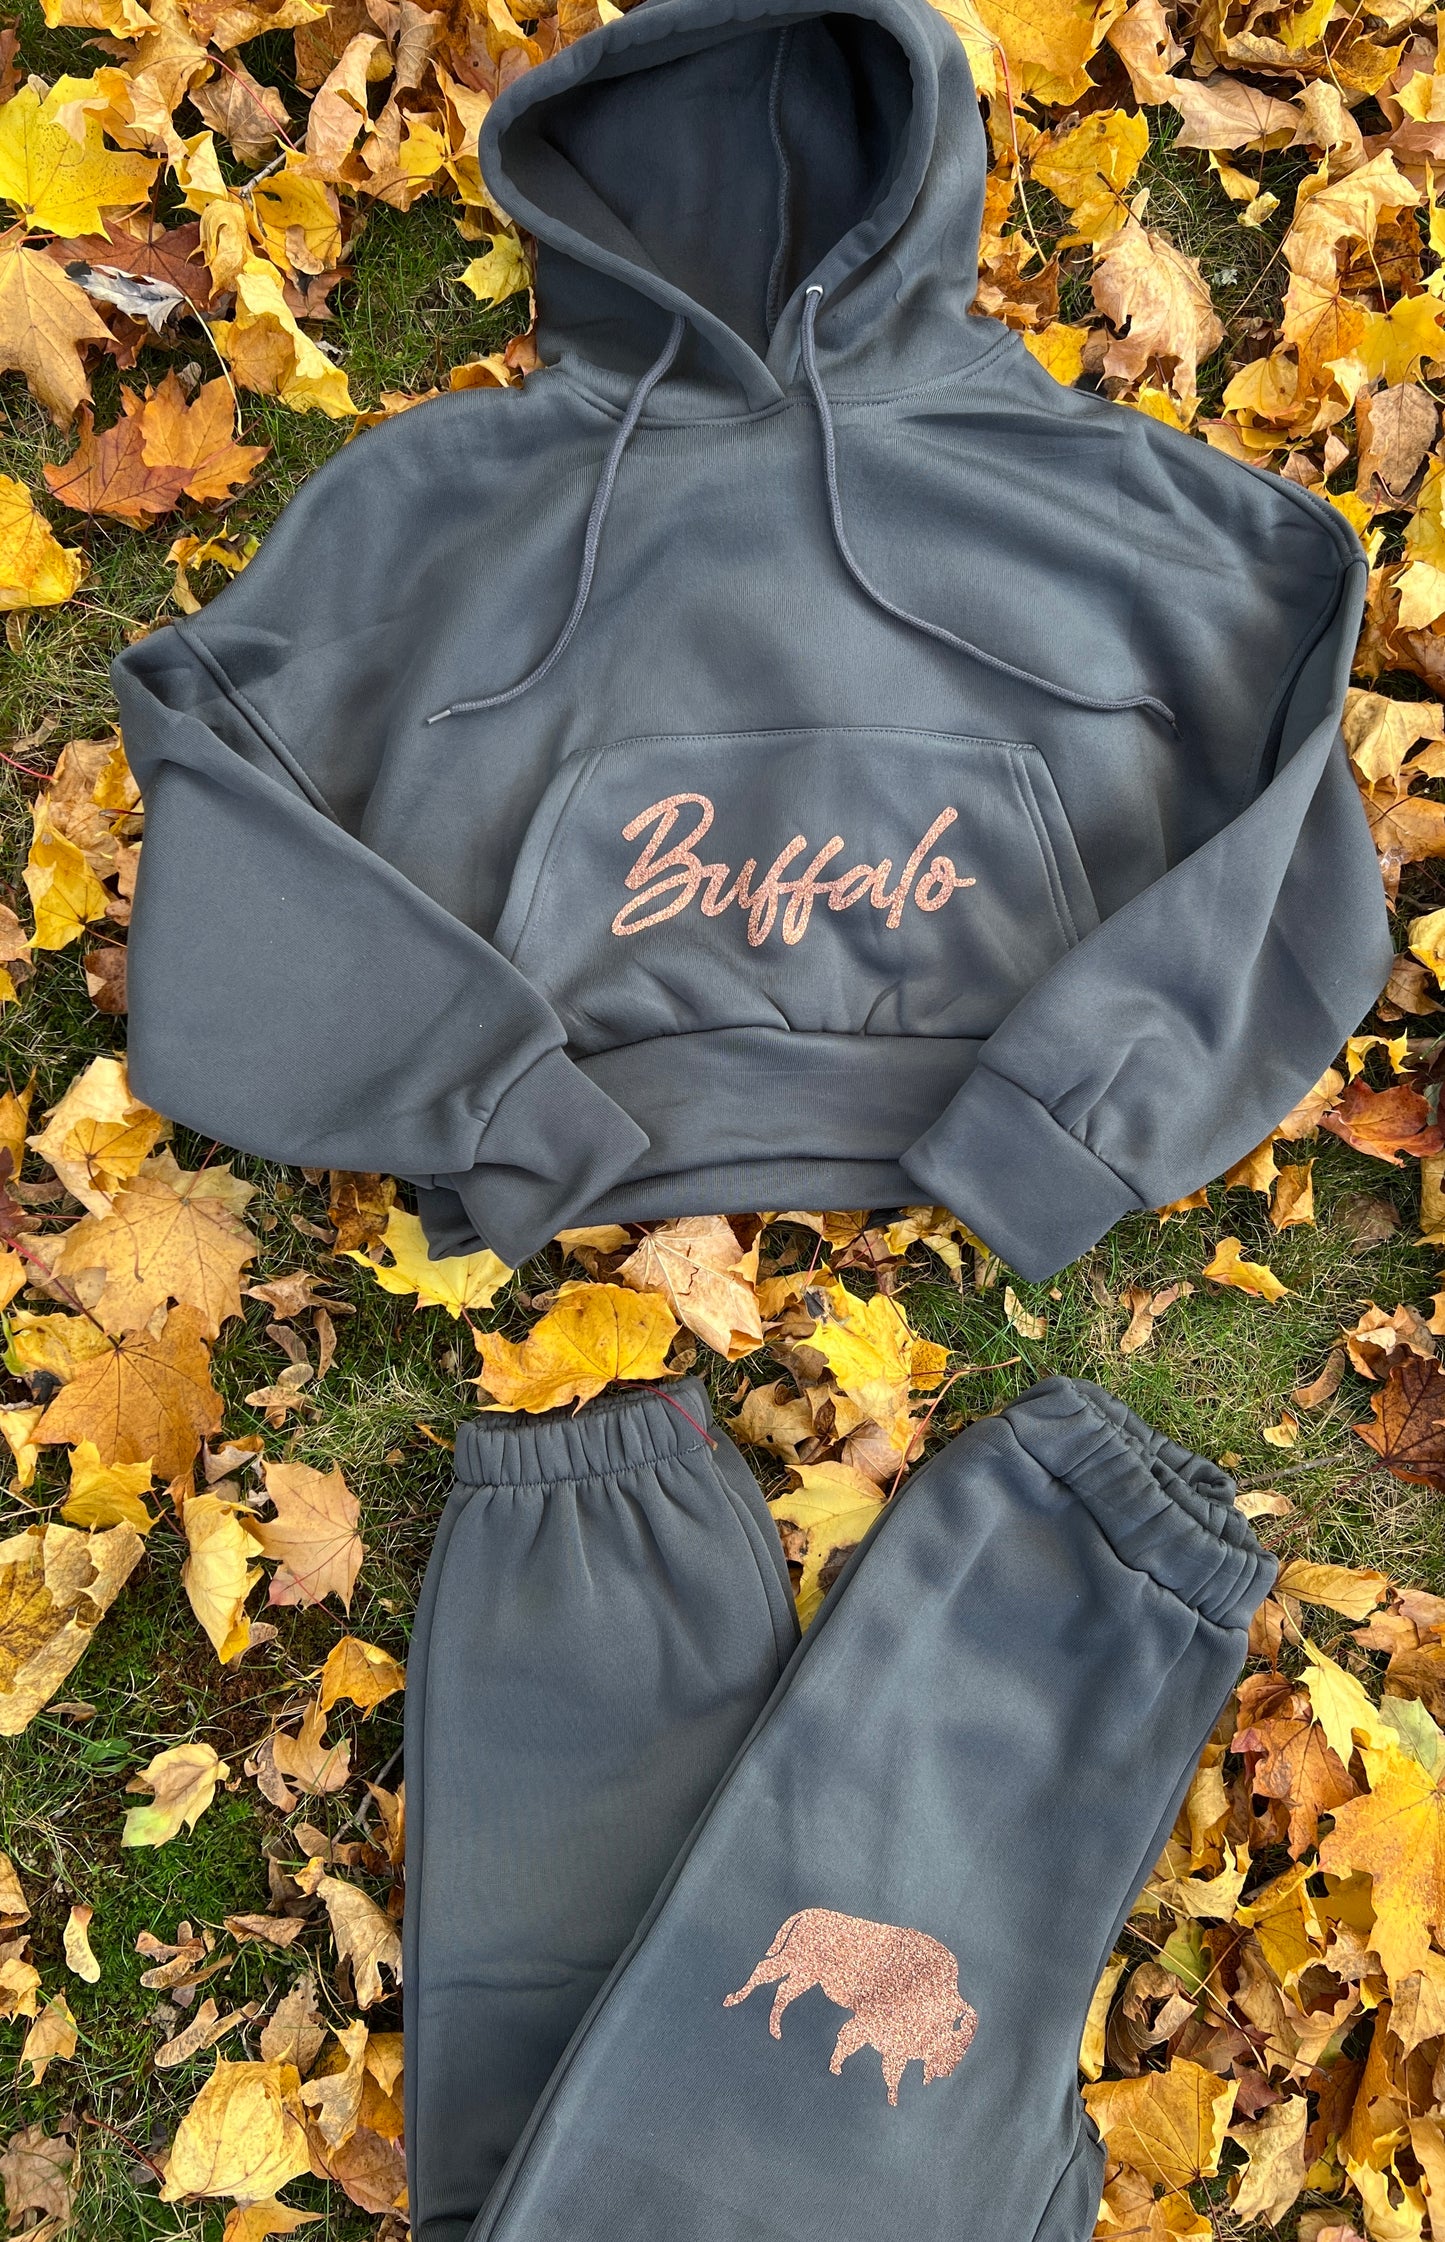 Buffalo sparkle cozy fleece sweatsuit